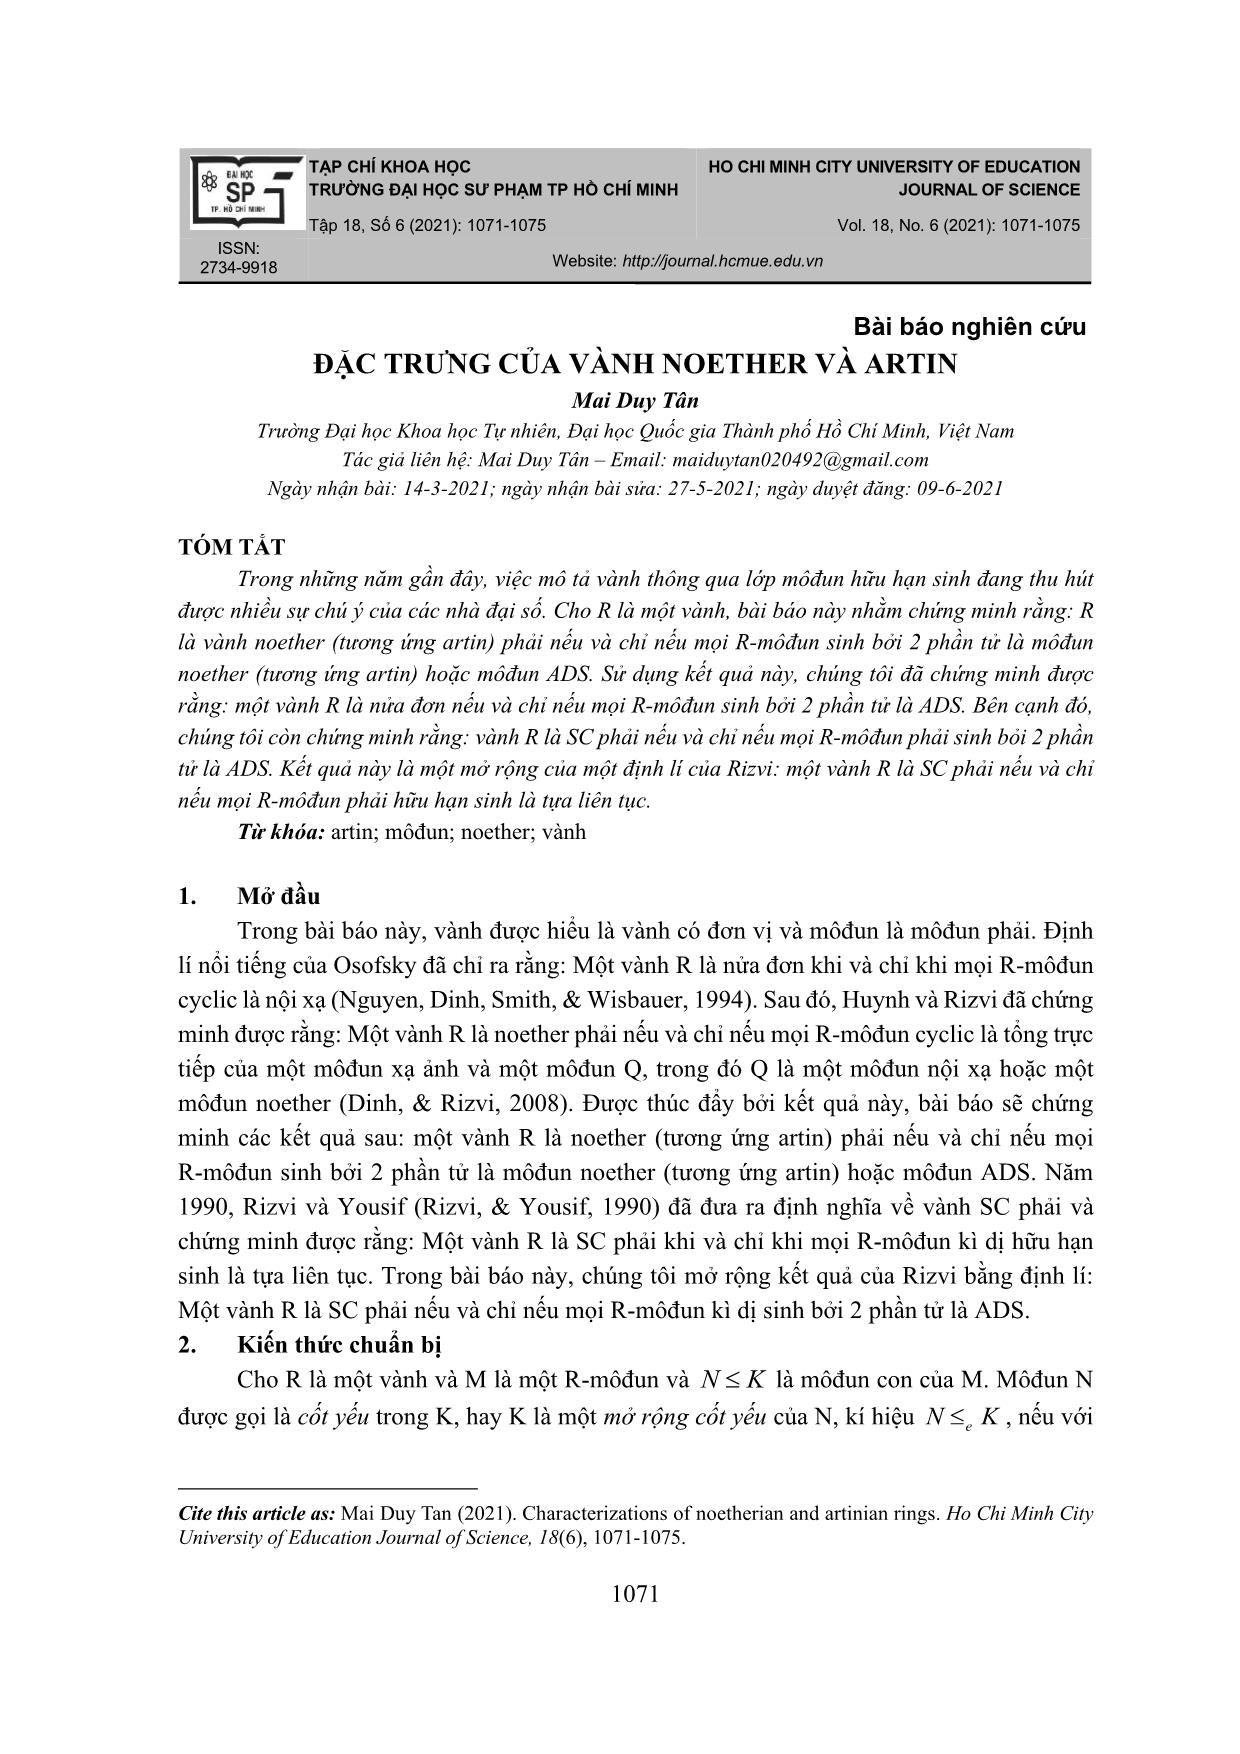 Đặc trưng của vành Noether và Artin trang 1